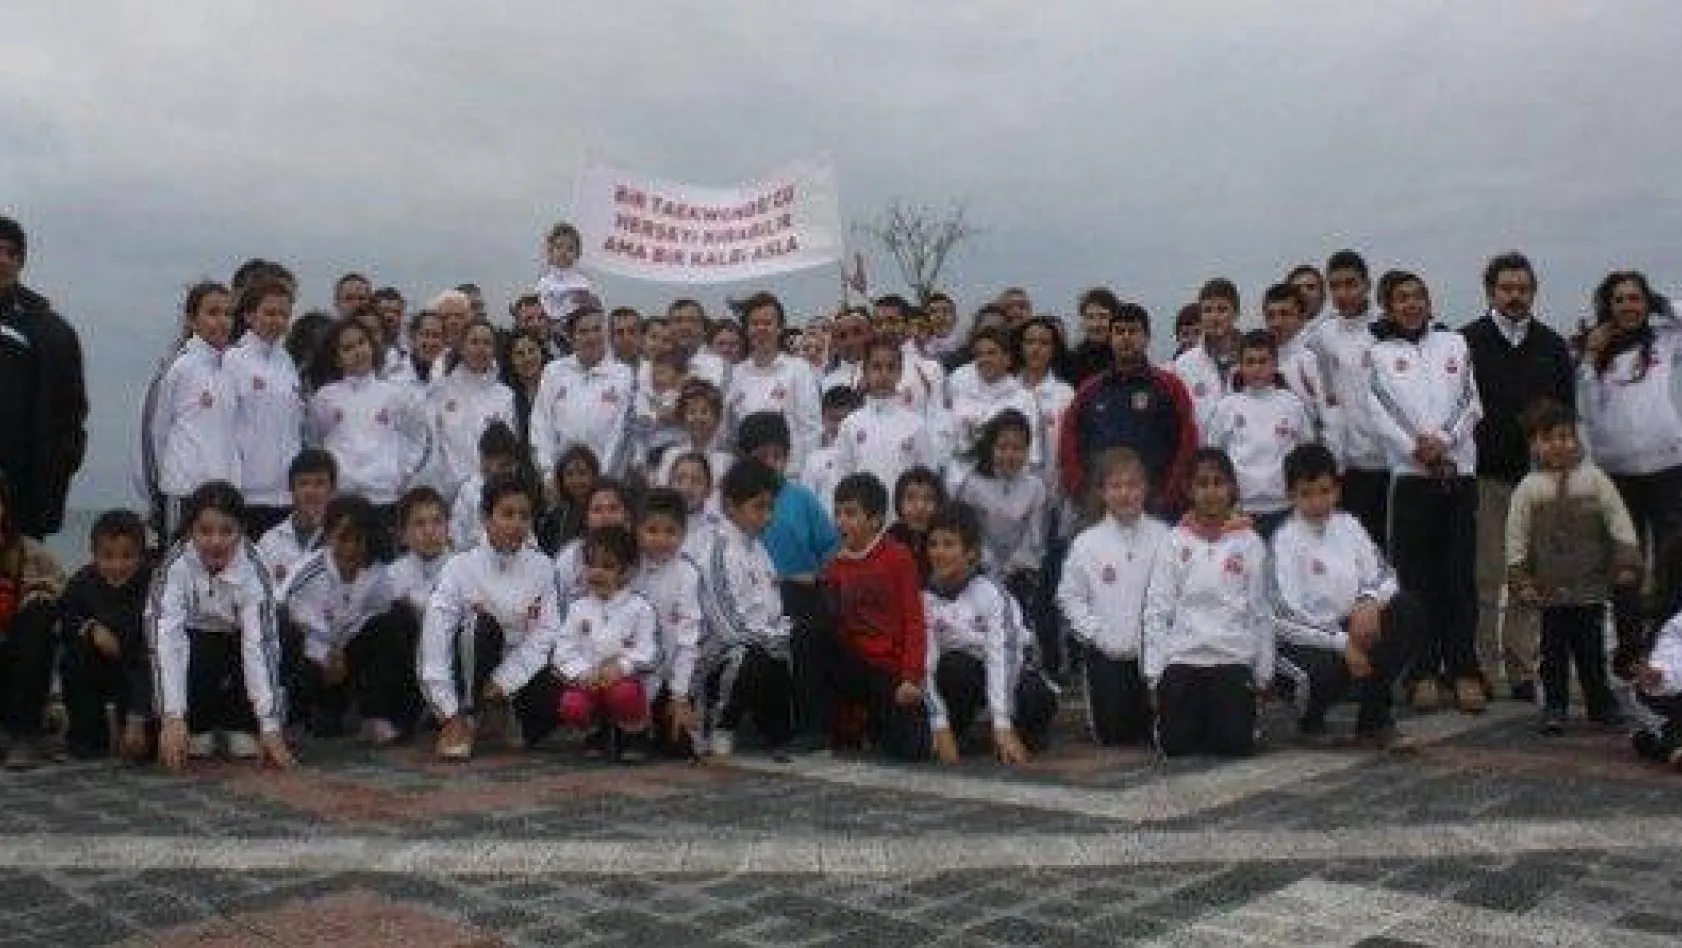 Ak Parti Taekwondocularla Buluştu